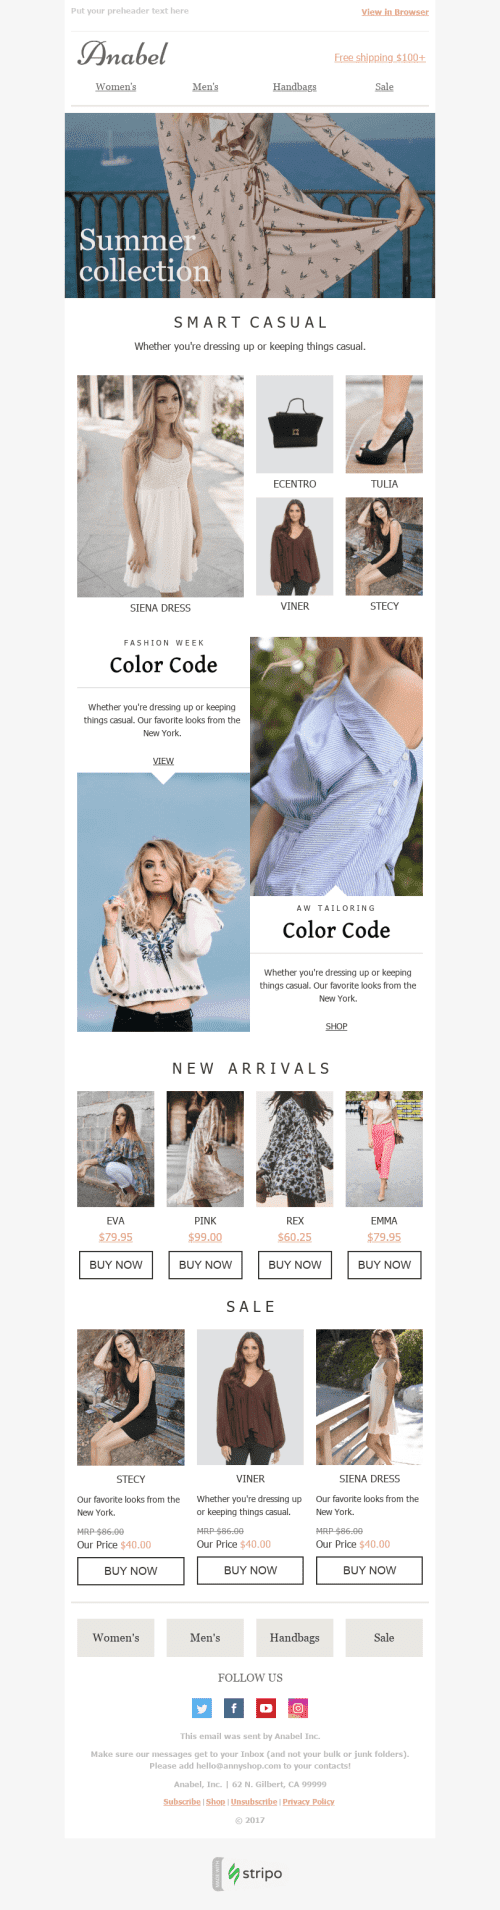 Modelo de E-mail de «Cores Brilhantes» de Promoção para a indústria de Moda mobile view